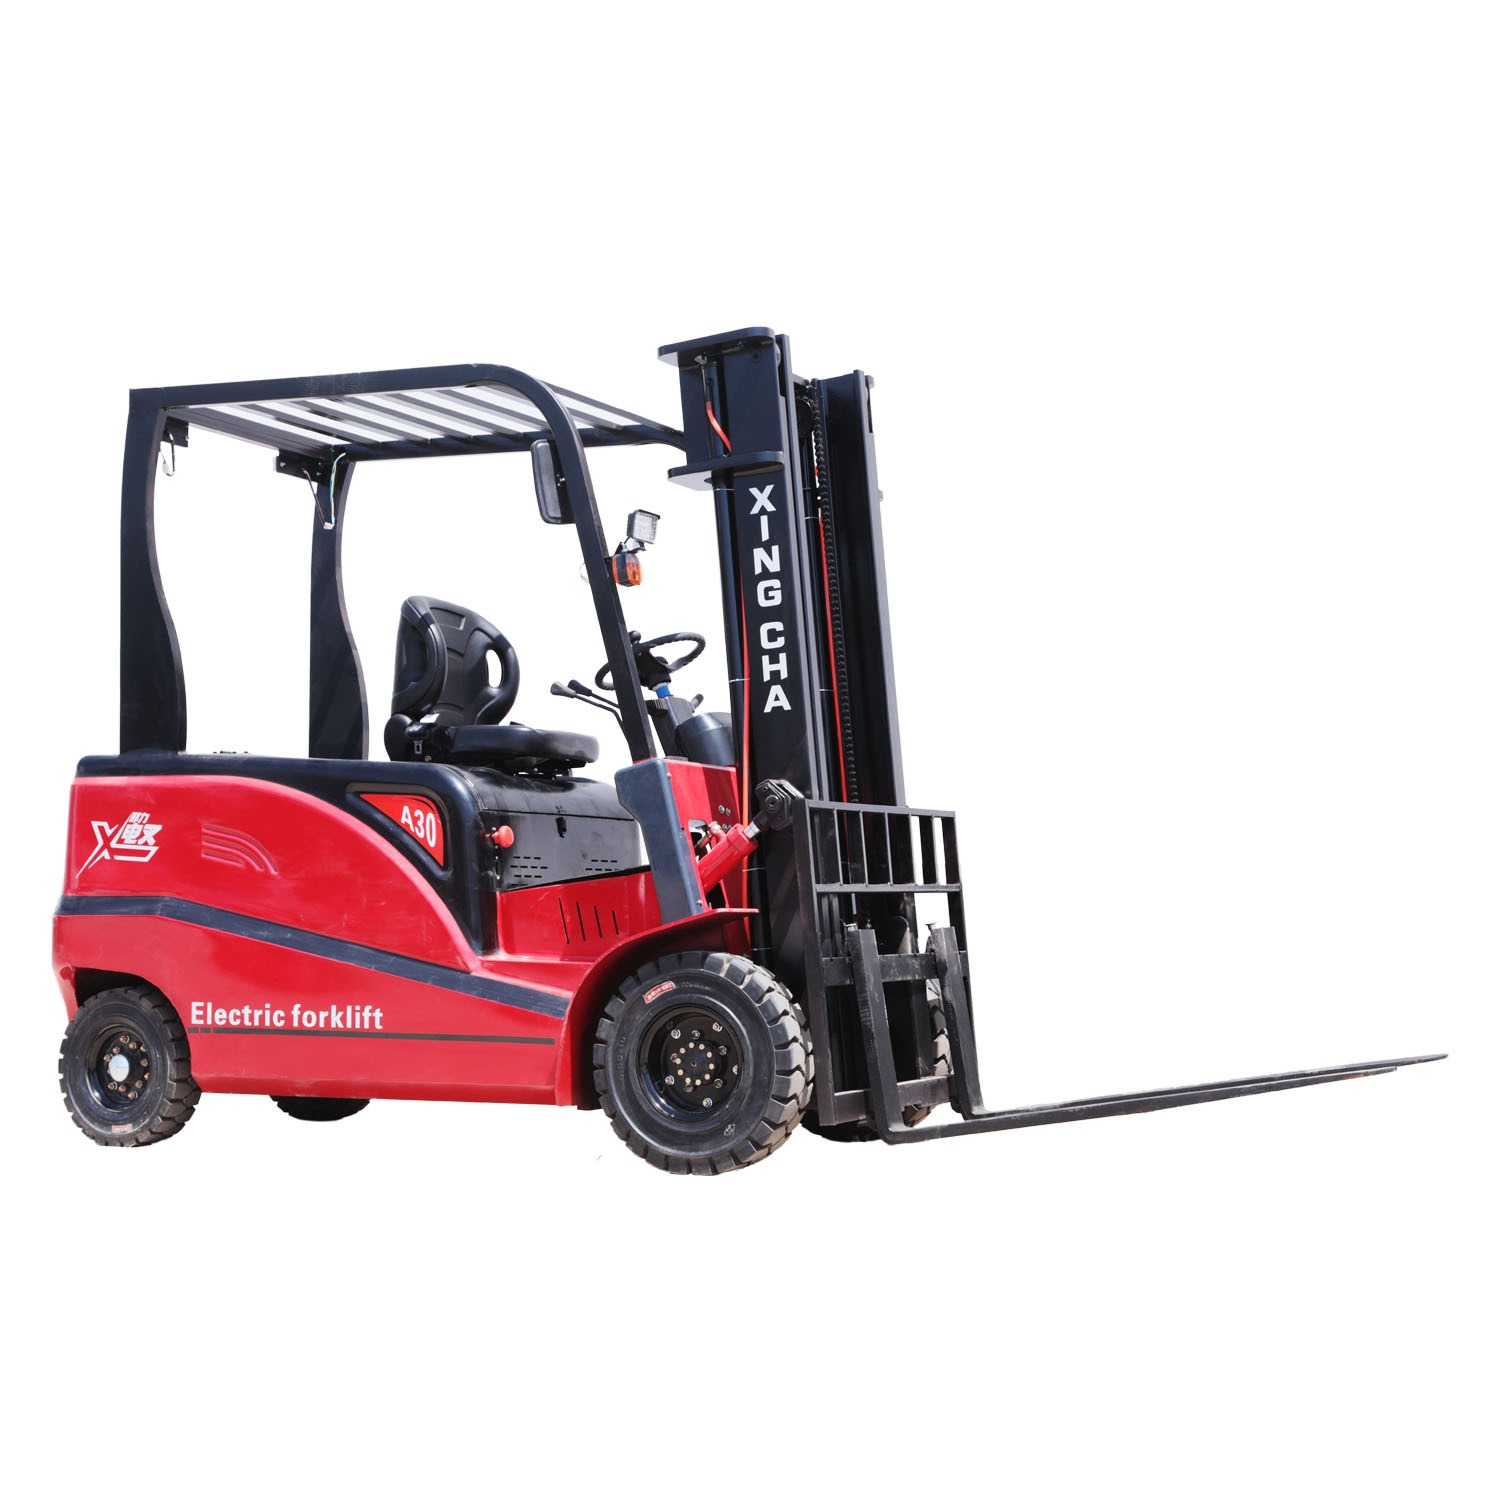 Wholesale Market 2500kg Outdoor Electric Forklift